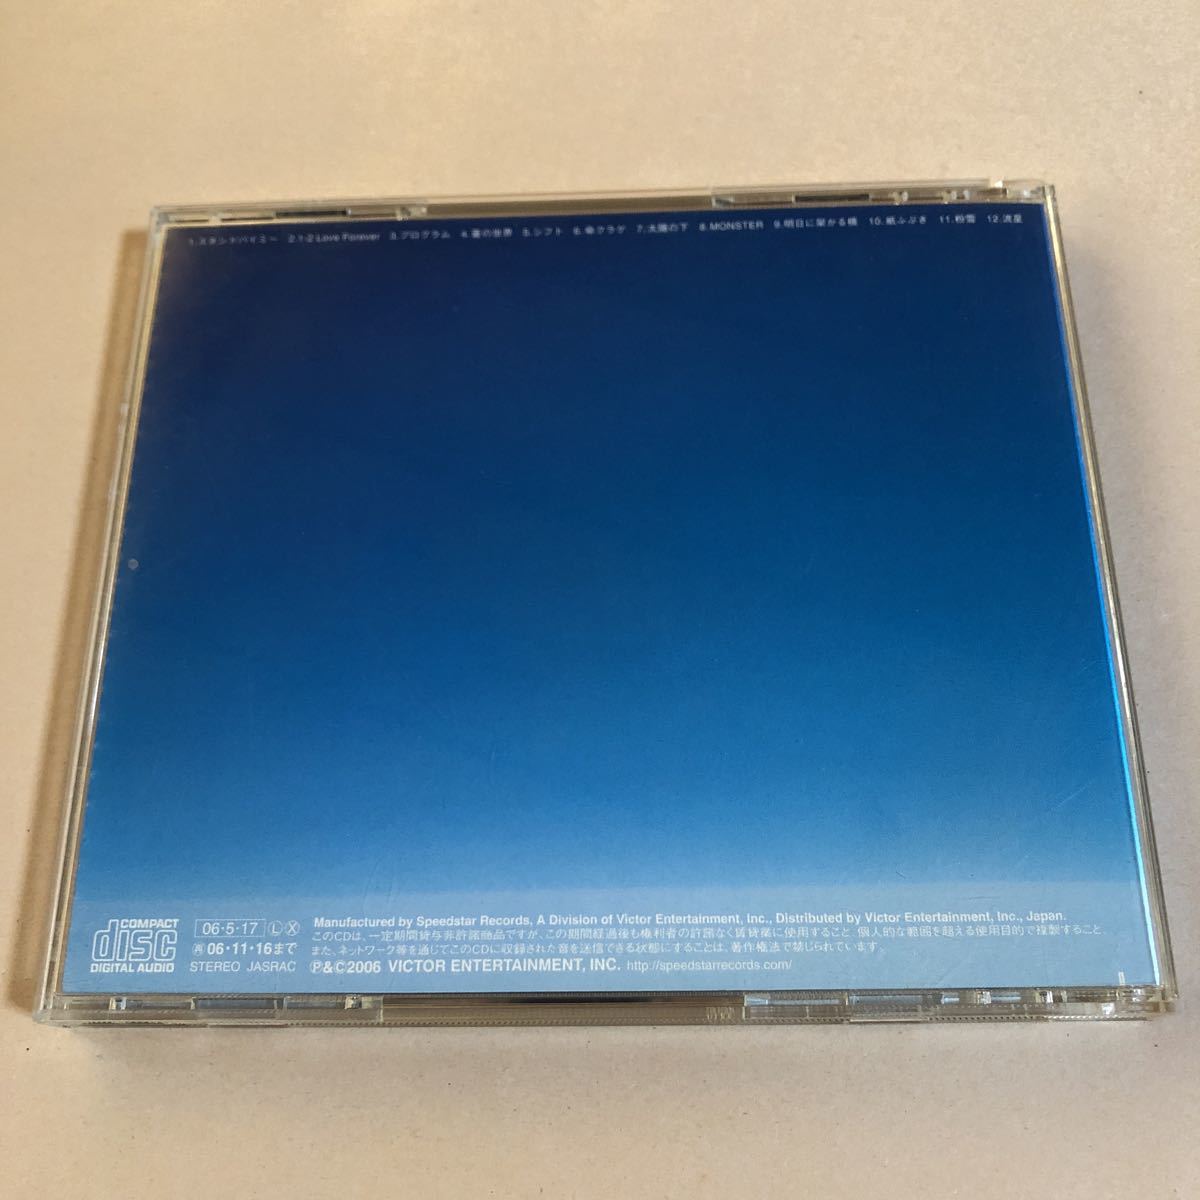 レミオロメン 1CD「HORIZON」_画像2